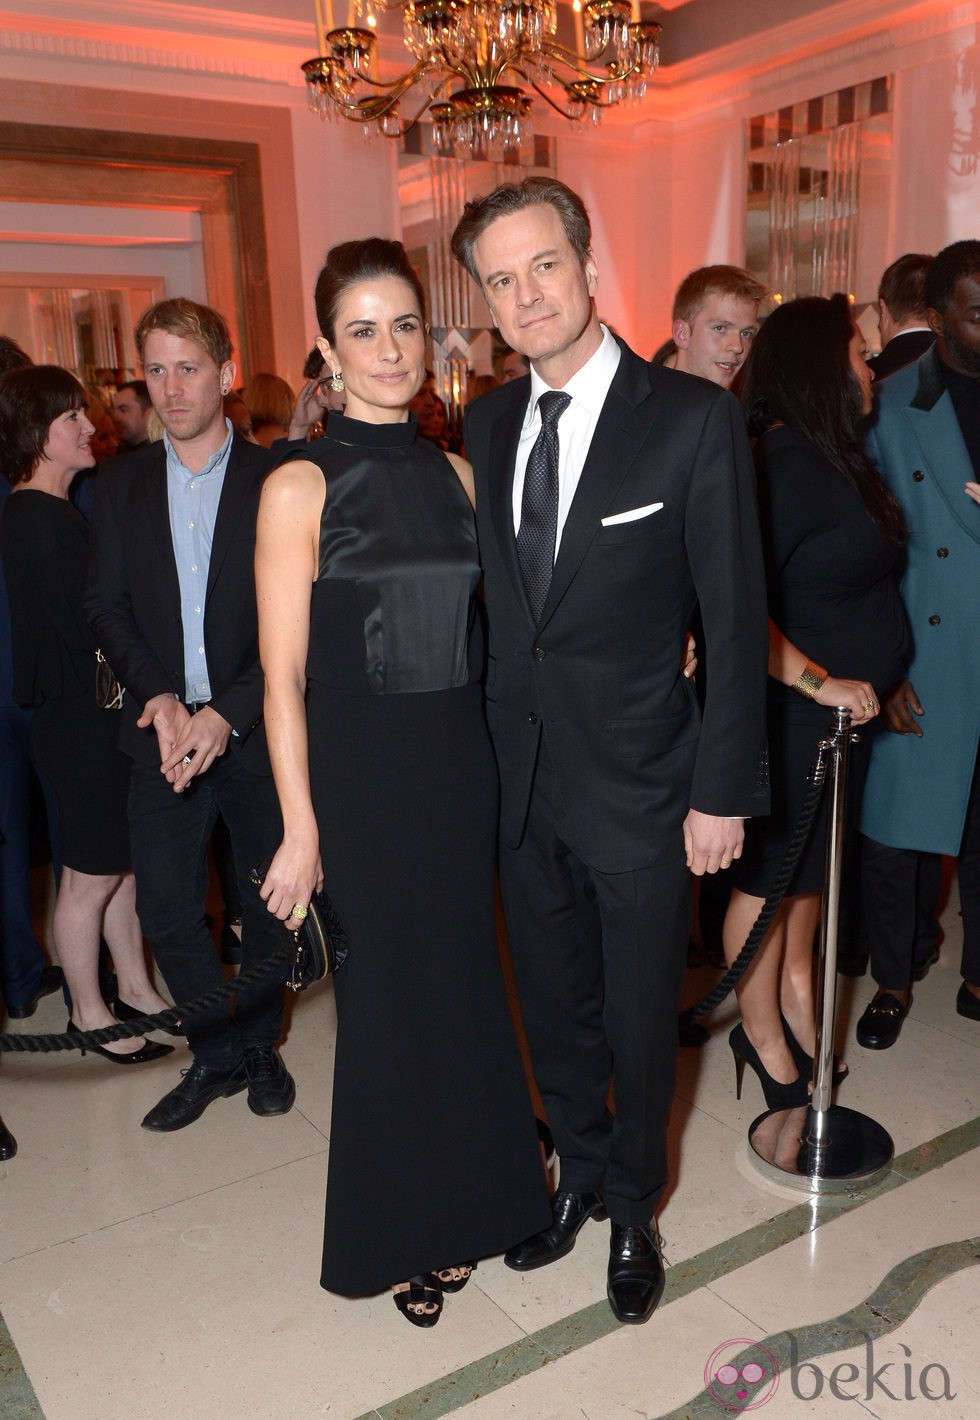 Colin Firth y Livia Firth en la fiesta Harper's Bazaar Mujer del Año 2013